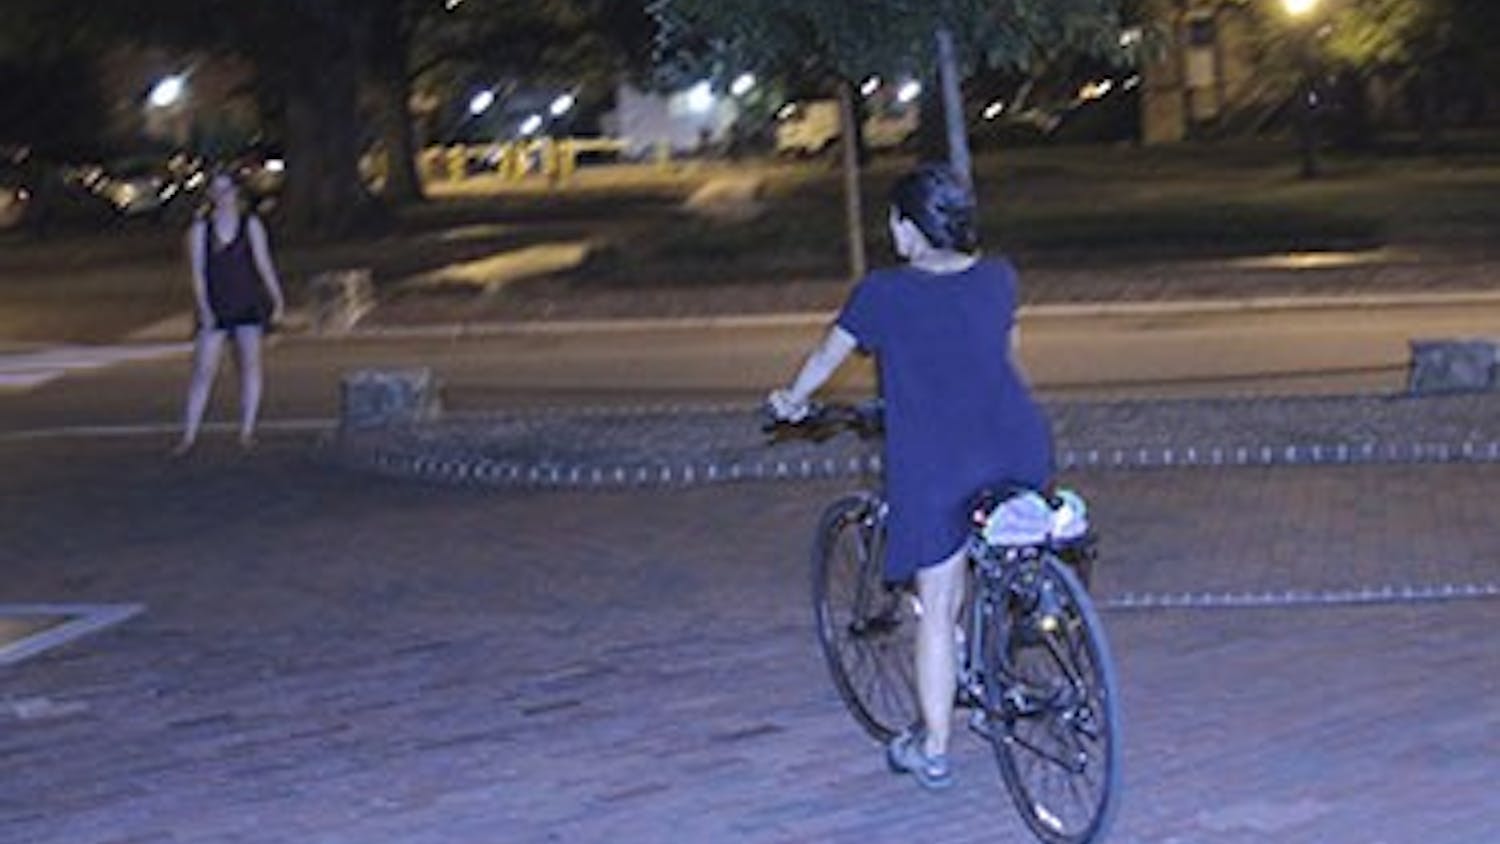 Senior Global Studies major&nbsp;Eileen Harvey rides her bike in front of Memorial hall on Thursday night.